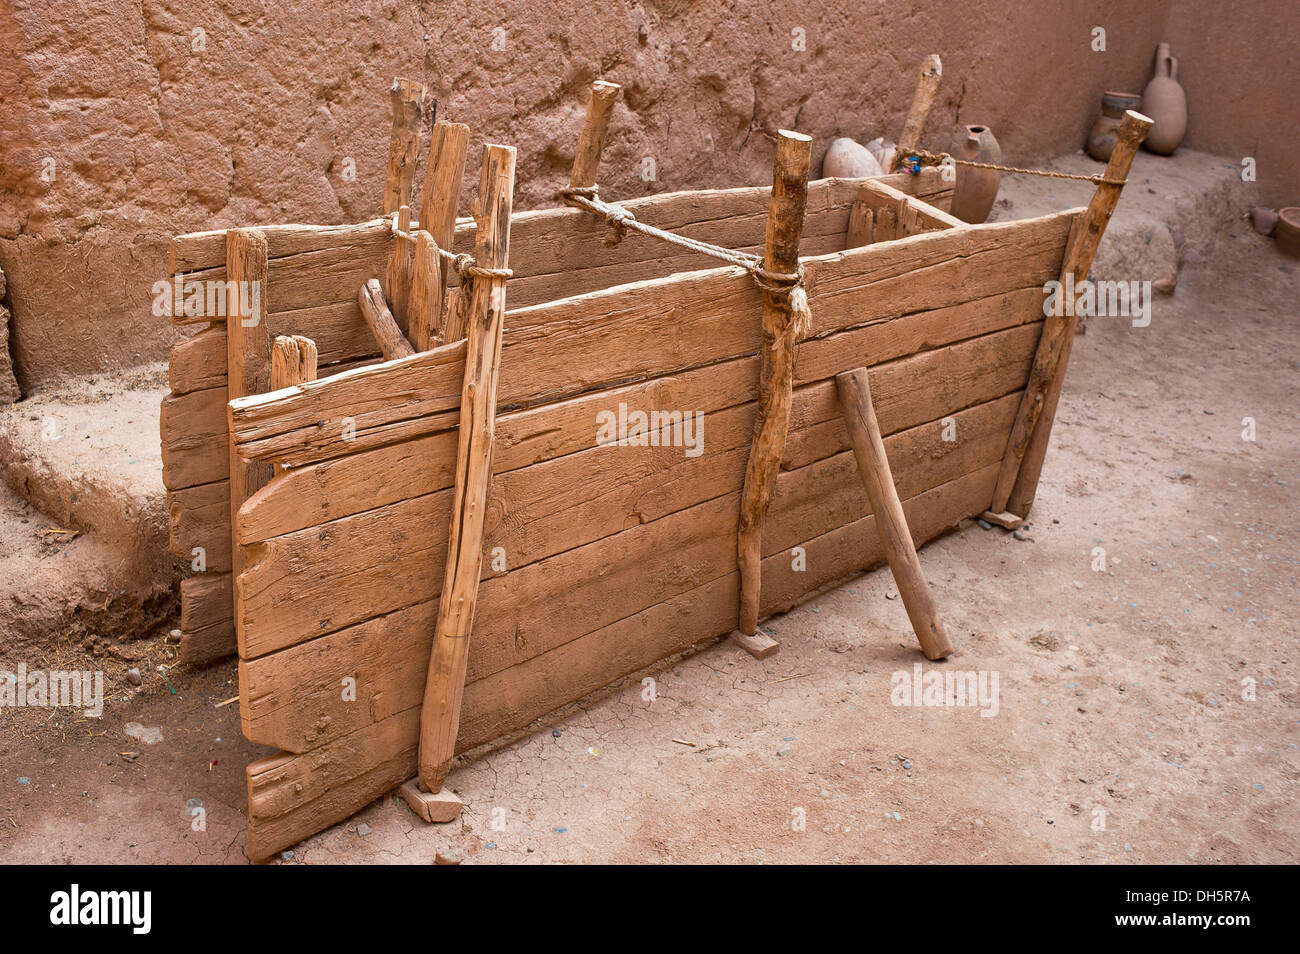 Legname tradizionale cassaforma per mattone di fango o adobe edifici in mattoni di fango fortezza, kasbah, sud del Marocco, Marocco, Africa Foto Stock